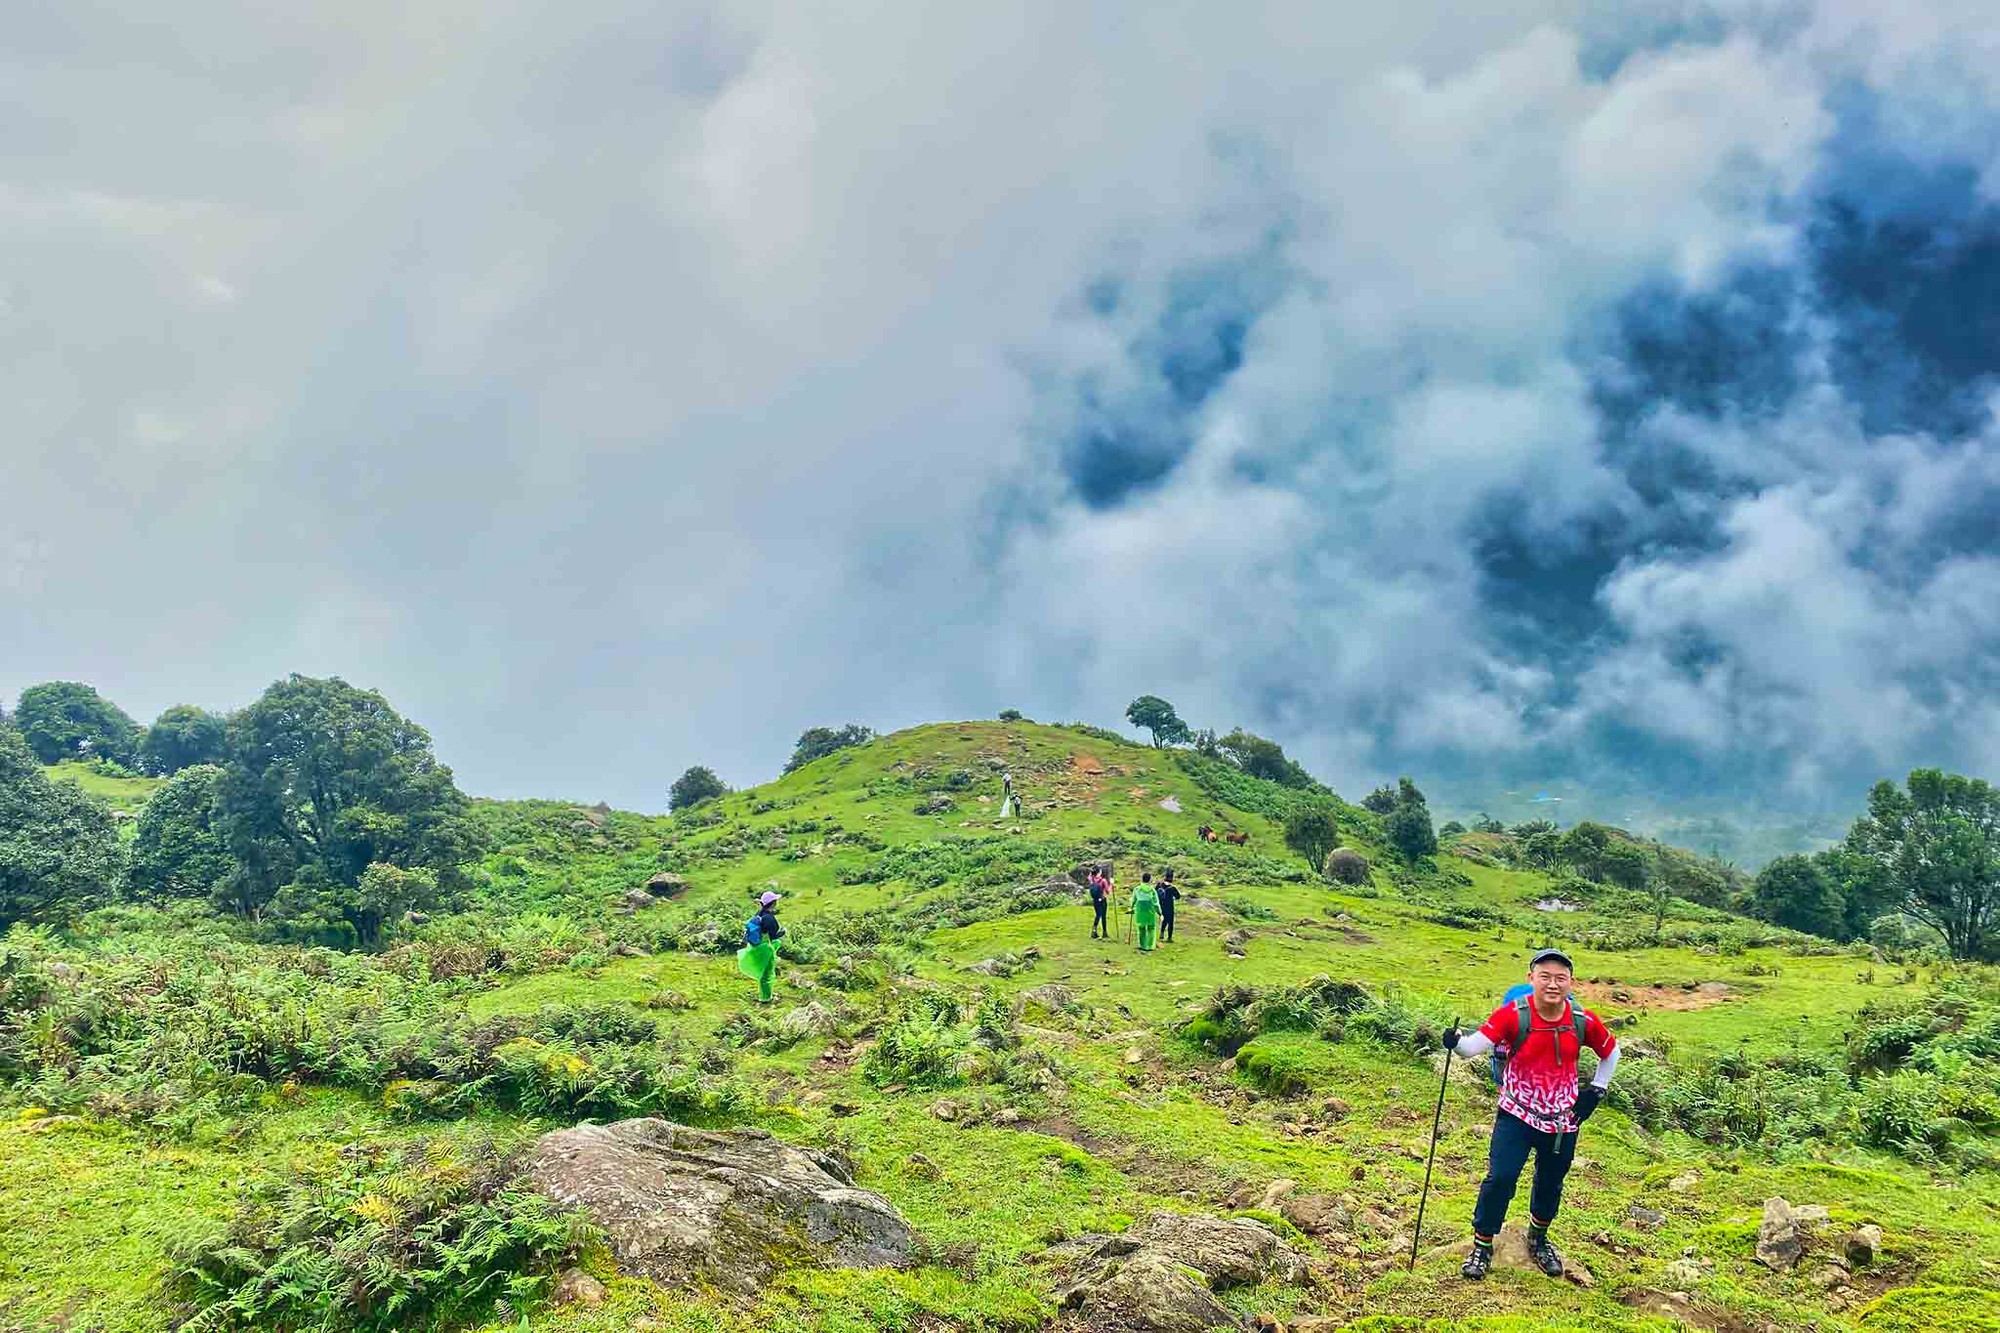 Băng rừng 2 ngày ngắm ‘quỷ núi’, săn hốc đá hình ‘trái tim’ Nhìu Cồ San-một ngọn núi cao ở Lào Cai - Ảnh 5.